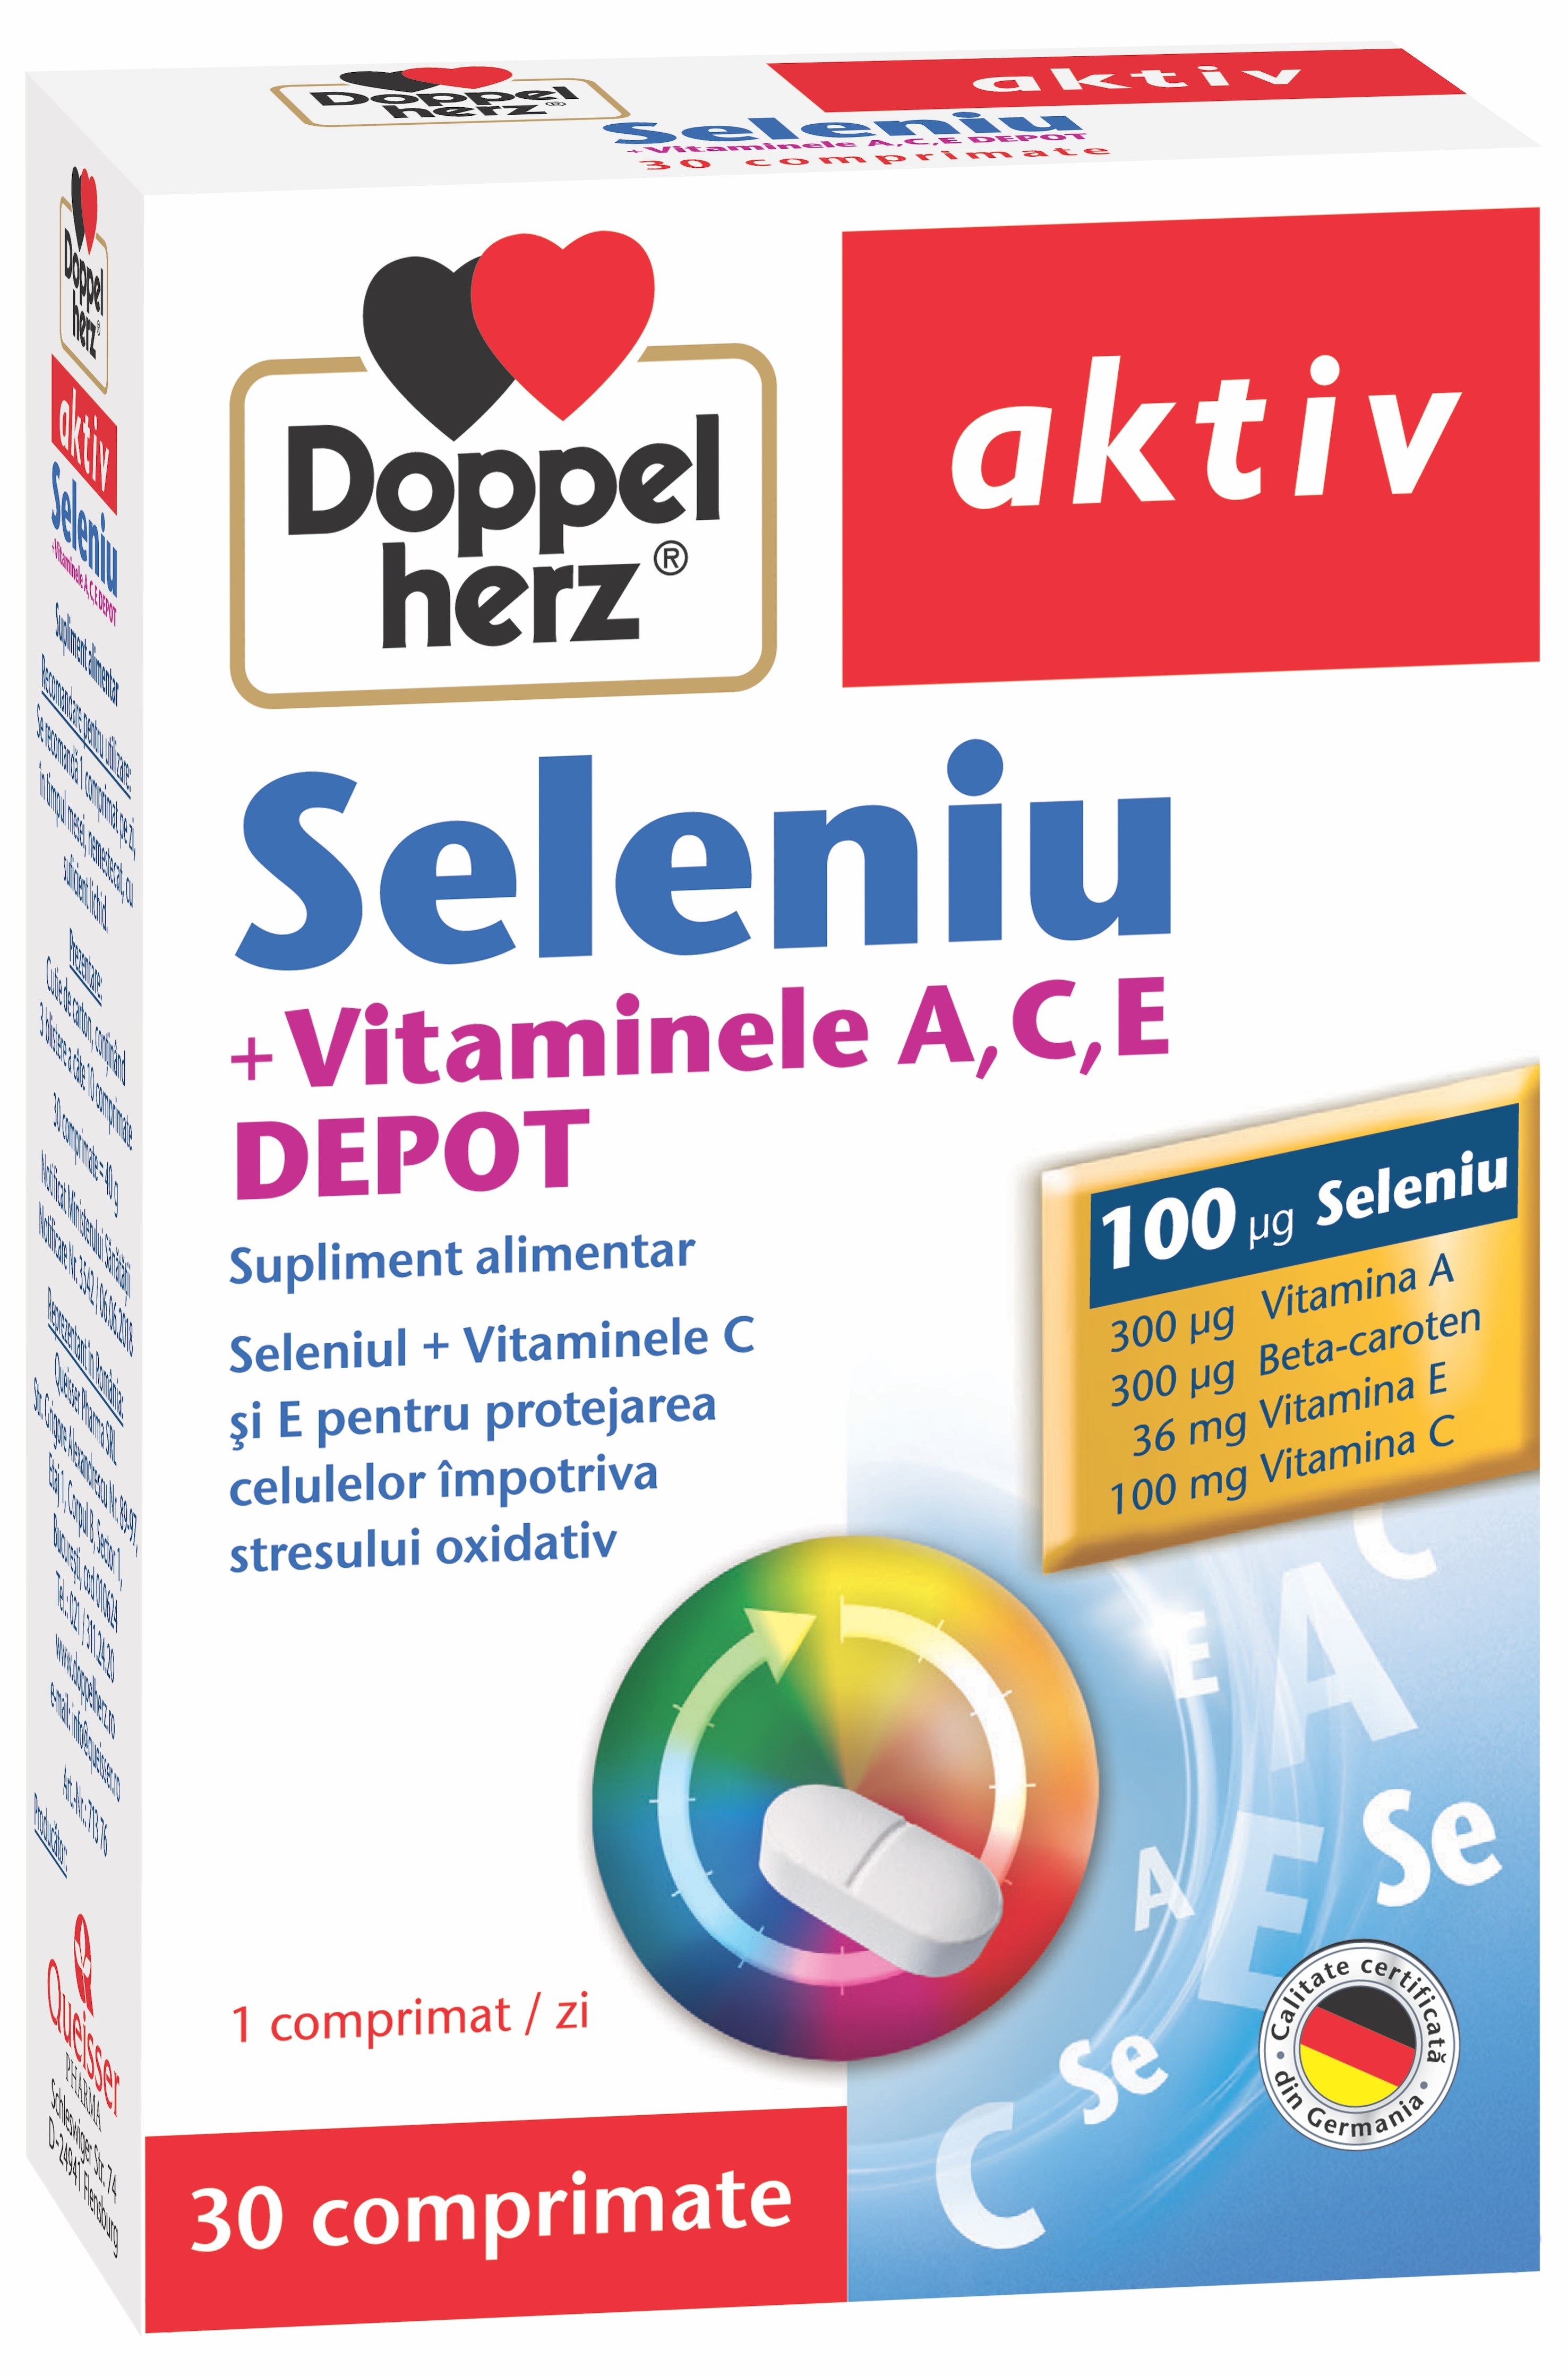 Imunitate scazuta - Doppelherz Aktiv Seleniu + Vit.A+ C+ E Depot, 30 Comprimate, farmacieieftina.ro